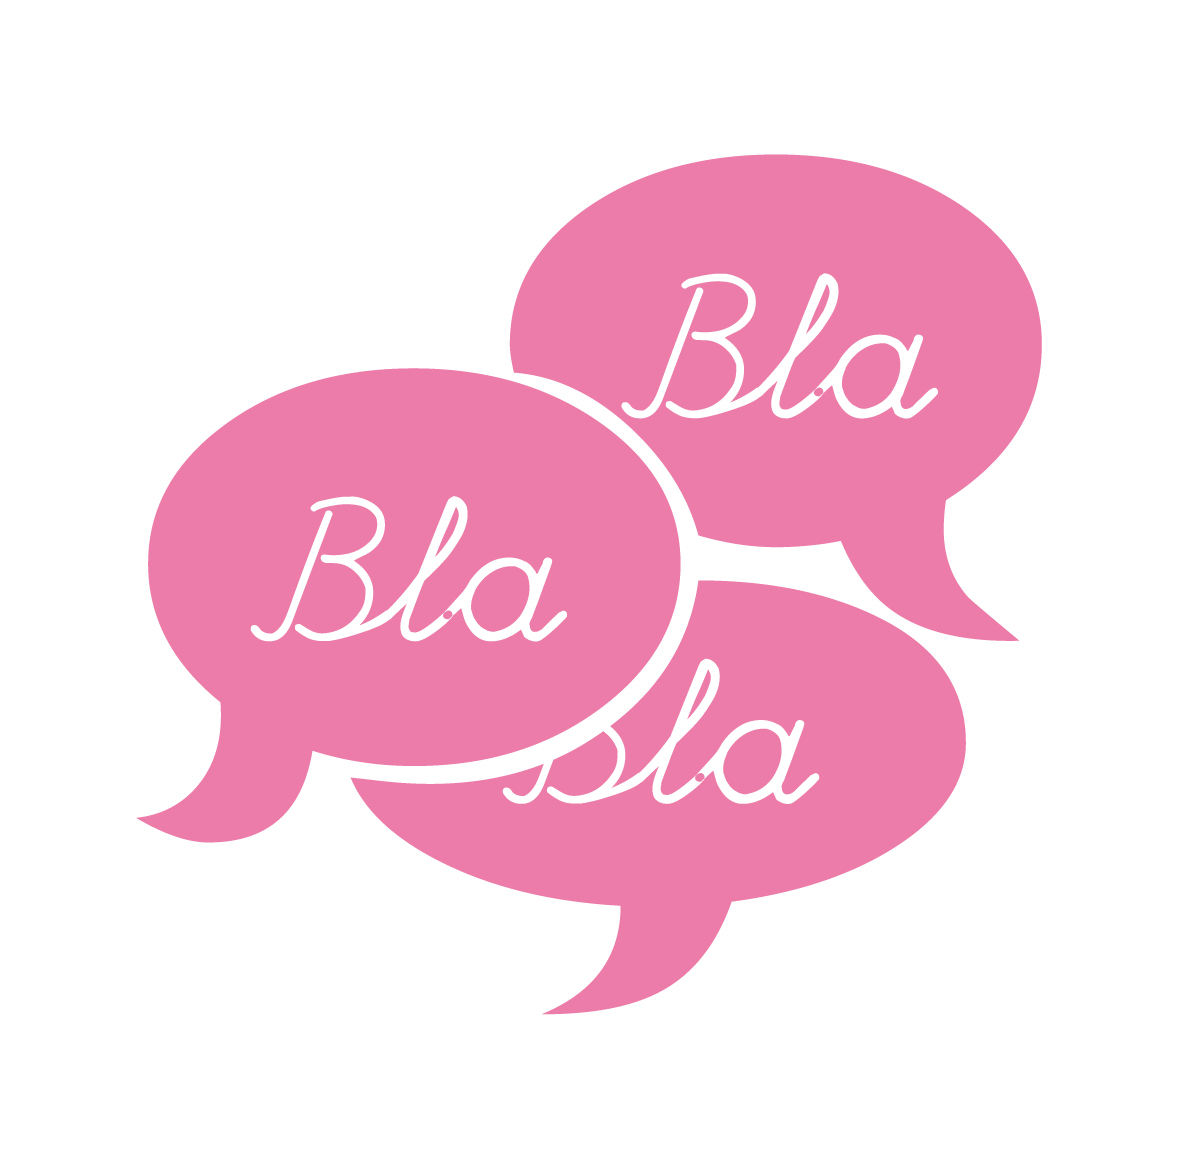 bla-bla-bla-shop-bla-bla-bla-shop-logo-by-marco-fasolini